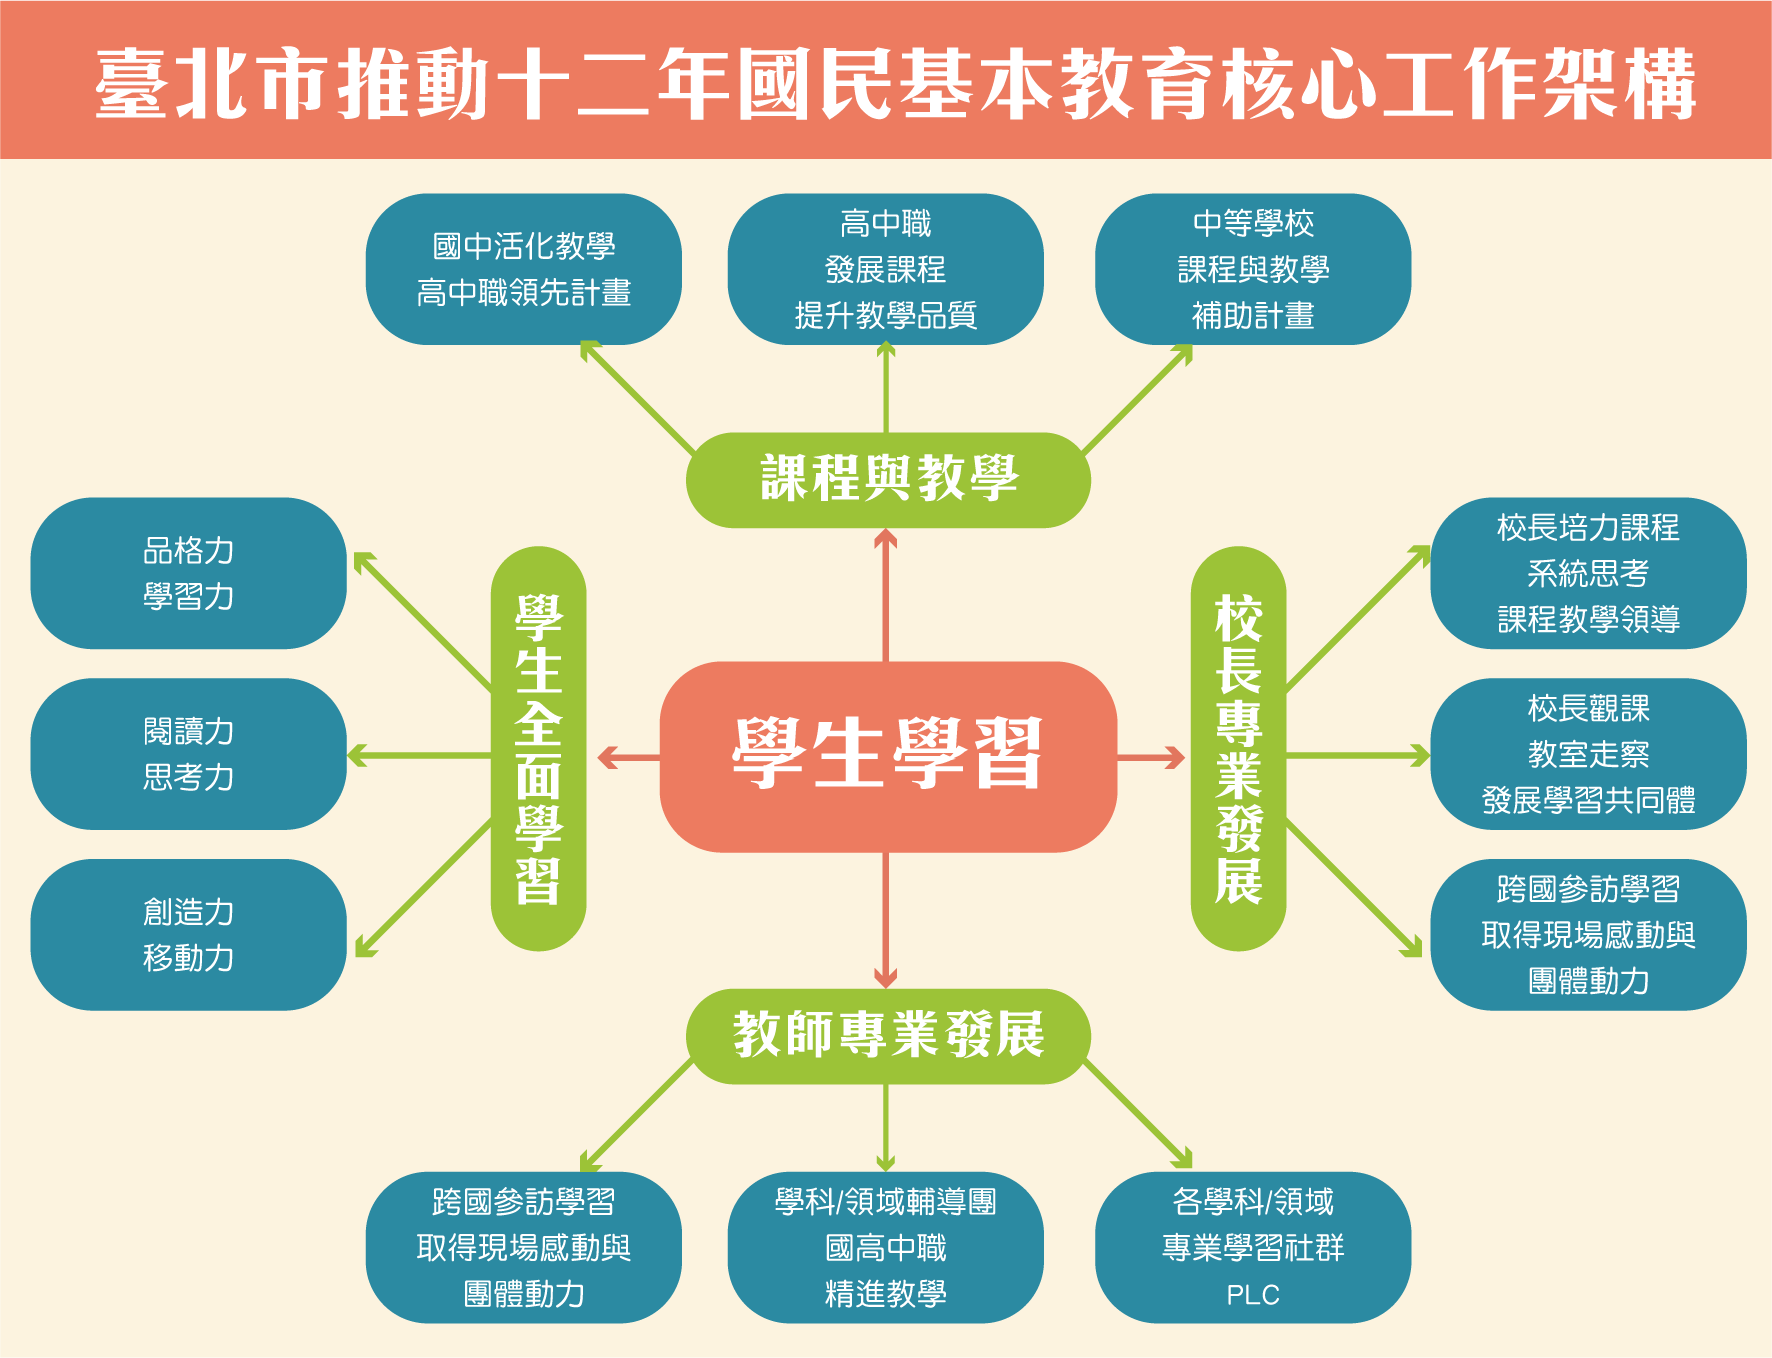 臺北市推動十二年國民基本教育核心工作架構圖